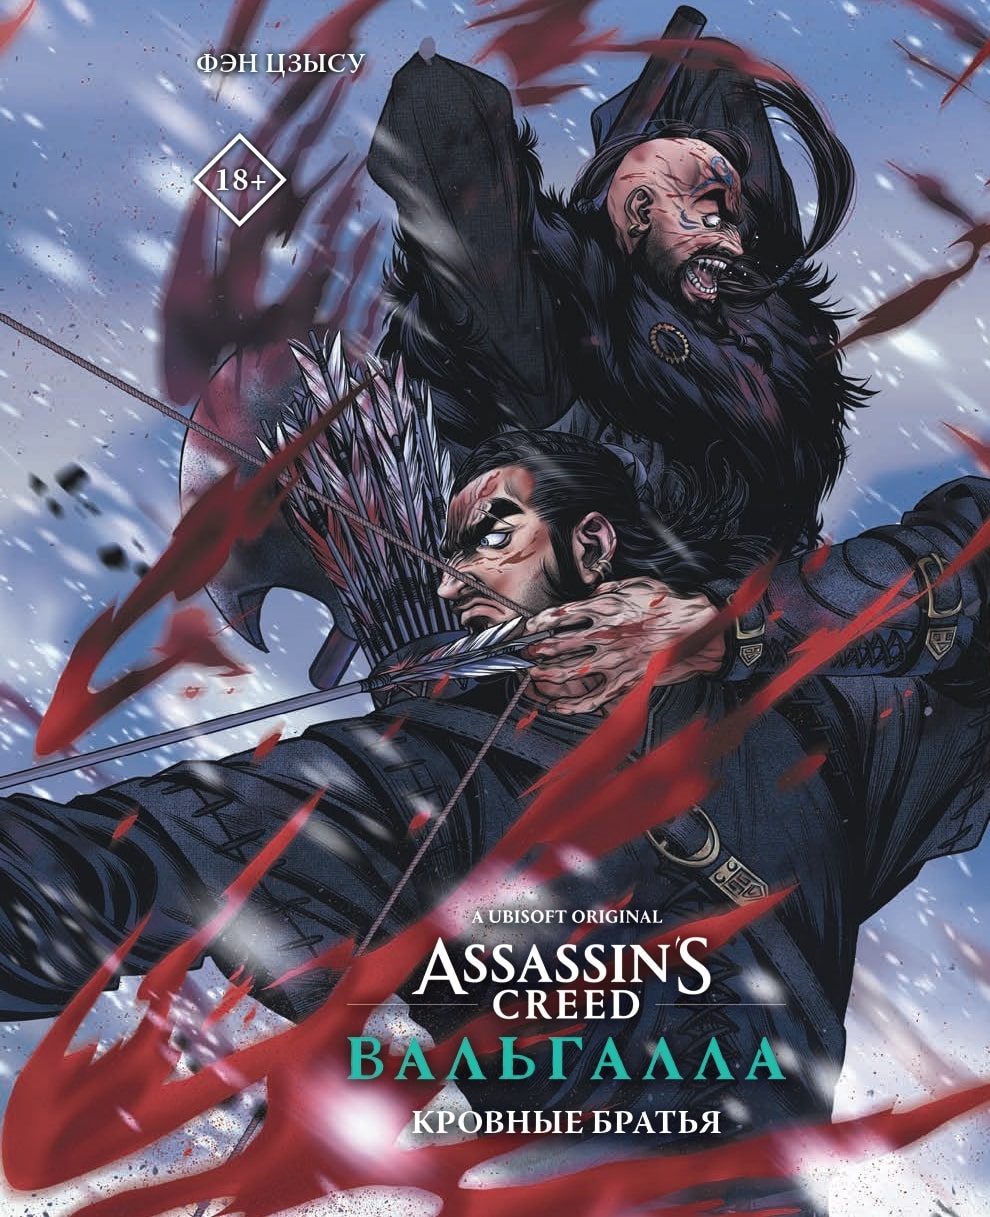 манга assassin s creed вальгалла кровные братья блокнот набор Фэн Цзысу Assassins Creed: Вальгалла. Кровные братья